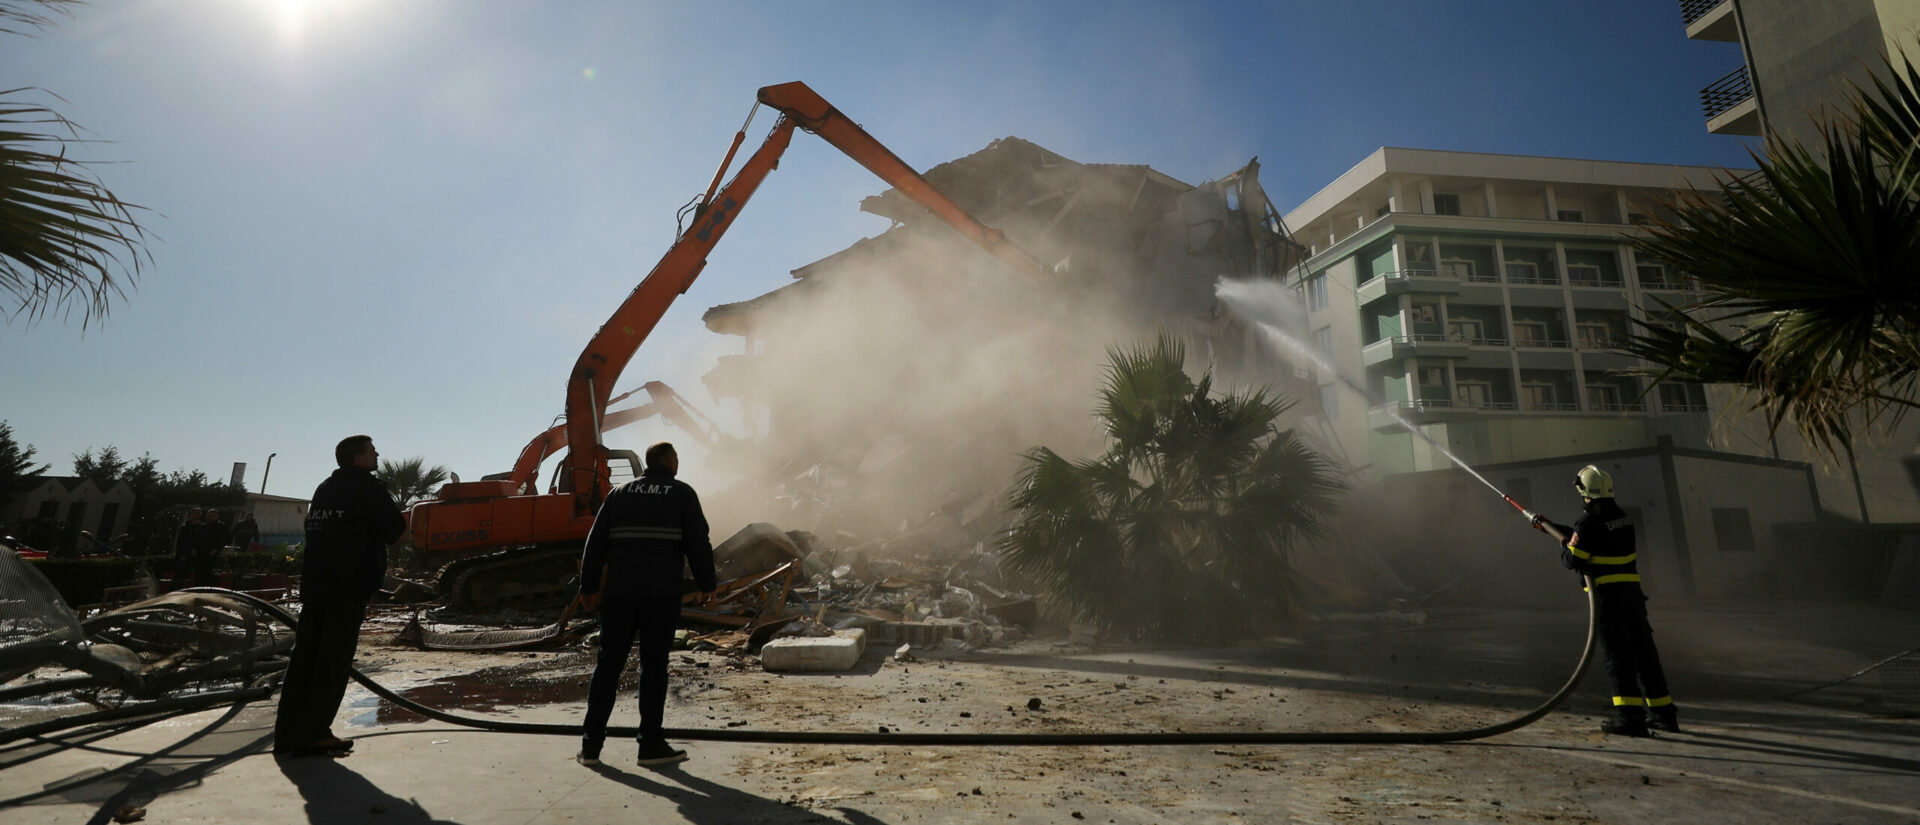 Le séisme du 26 novembre 2019 en Albanie a fait de gros dégâts | © EU Civil Protection/Flickr/CC BY-NC-ND 2.0